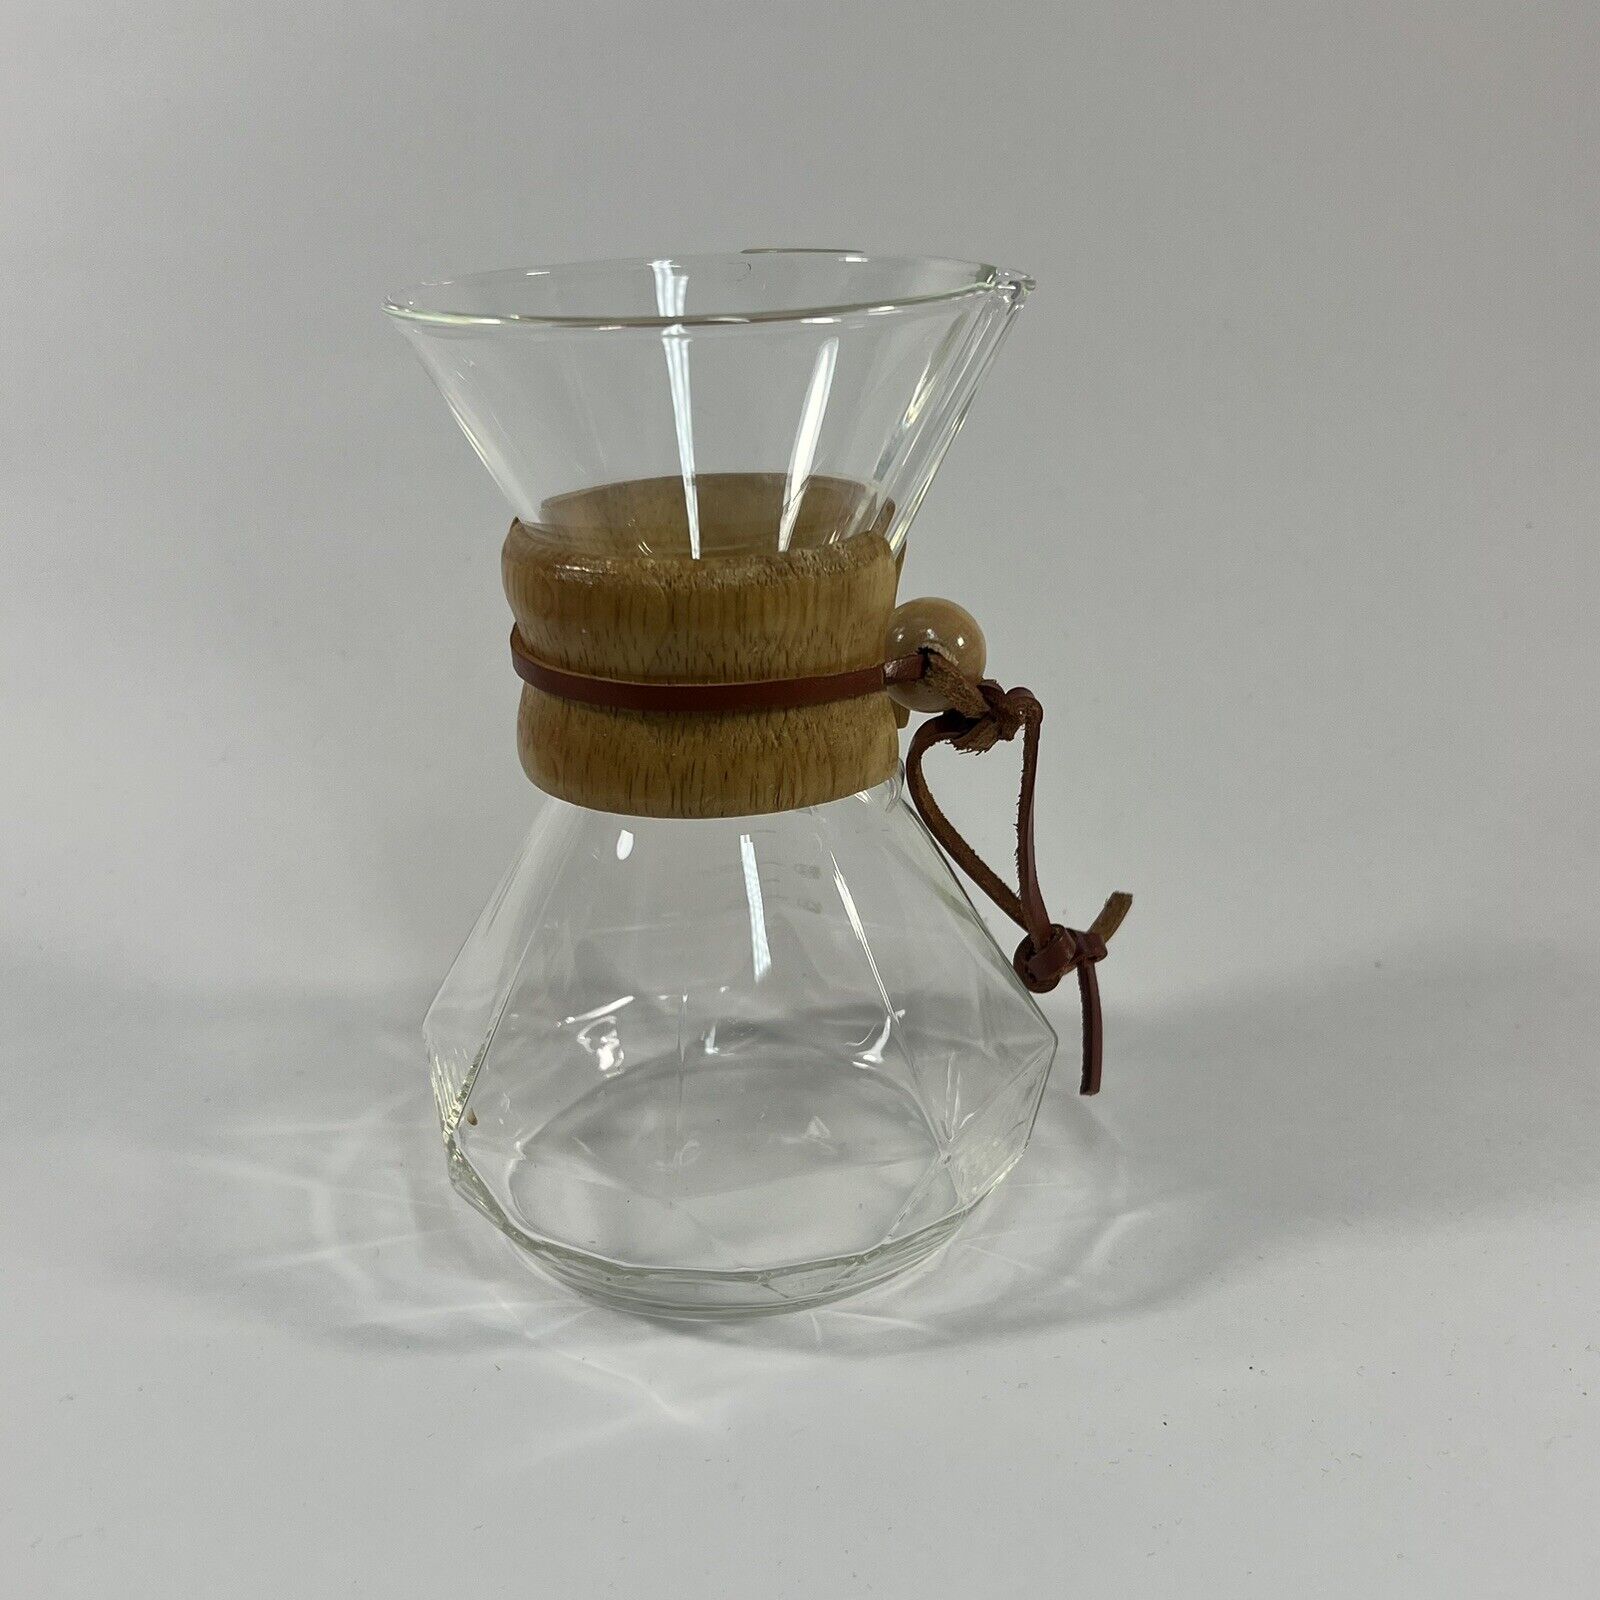 Pour Over Hexagonal  Coffee Maker Borosilicate Glass Carafe Brewer